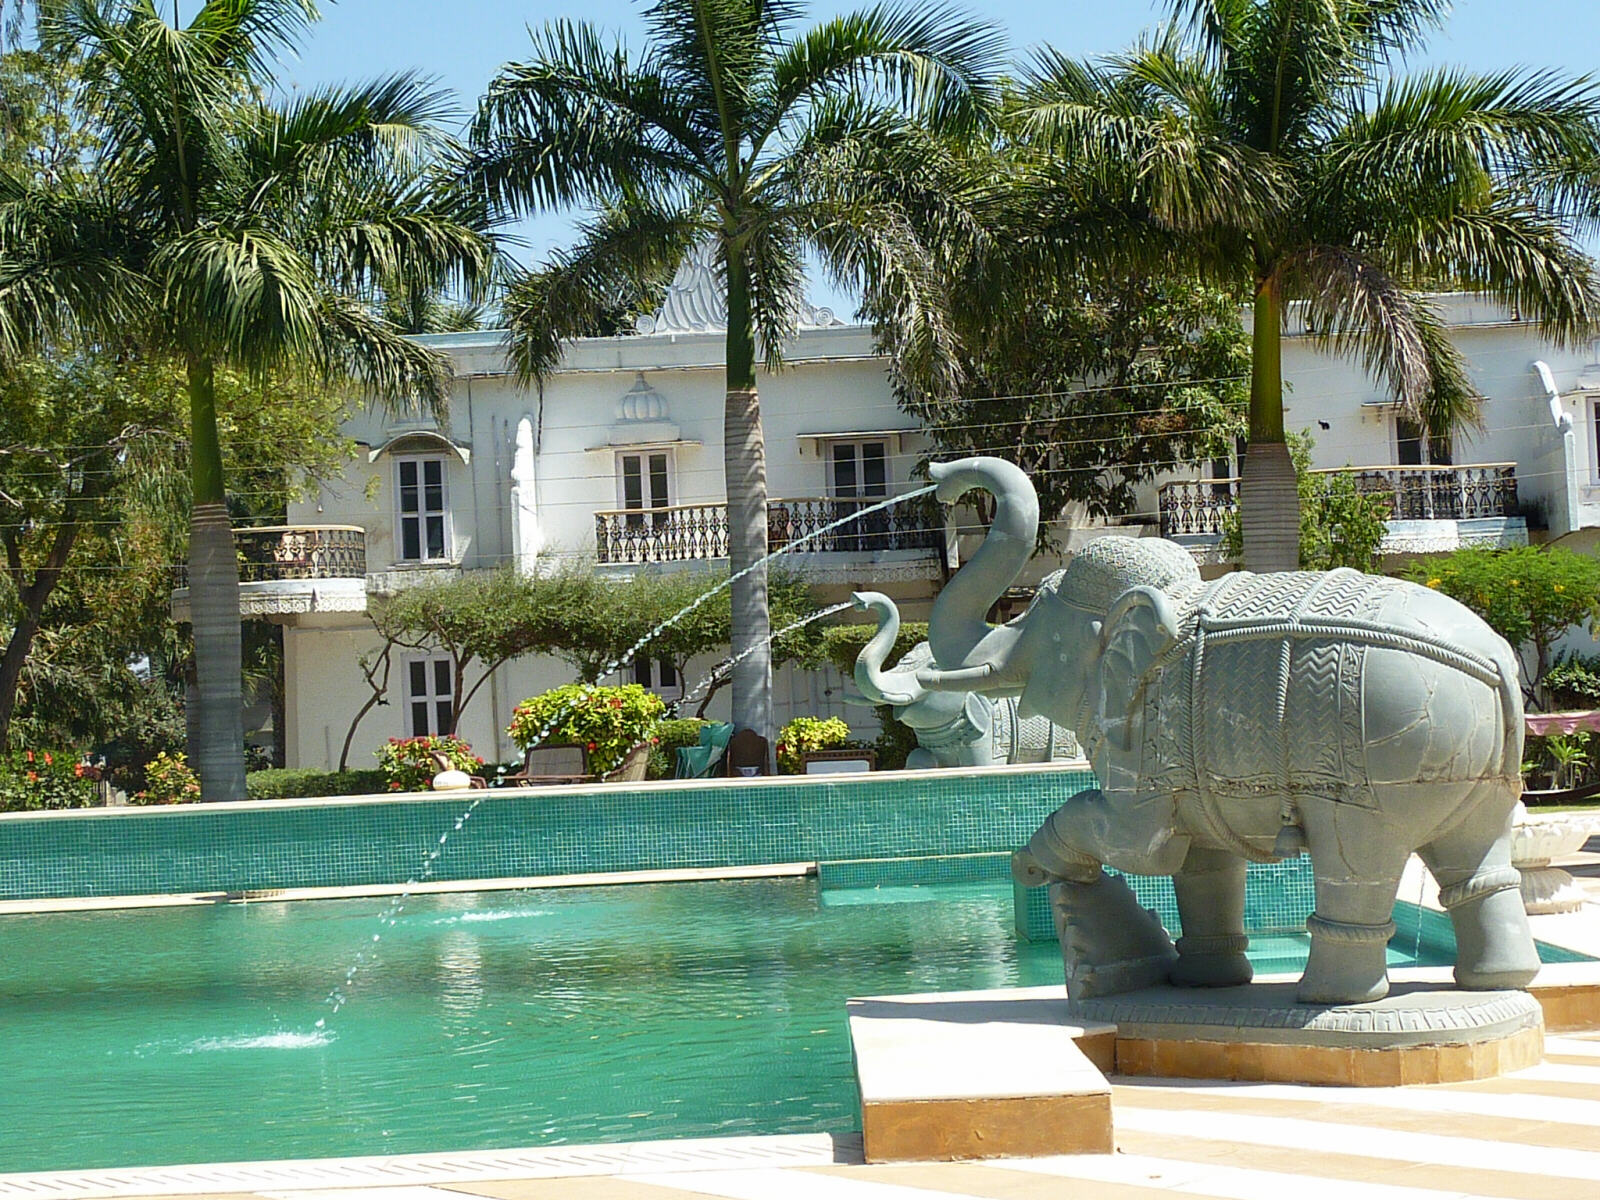 Swimming pool at the Udai Bilas palace, Rajasthan